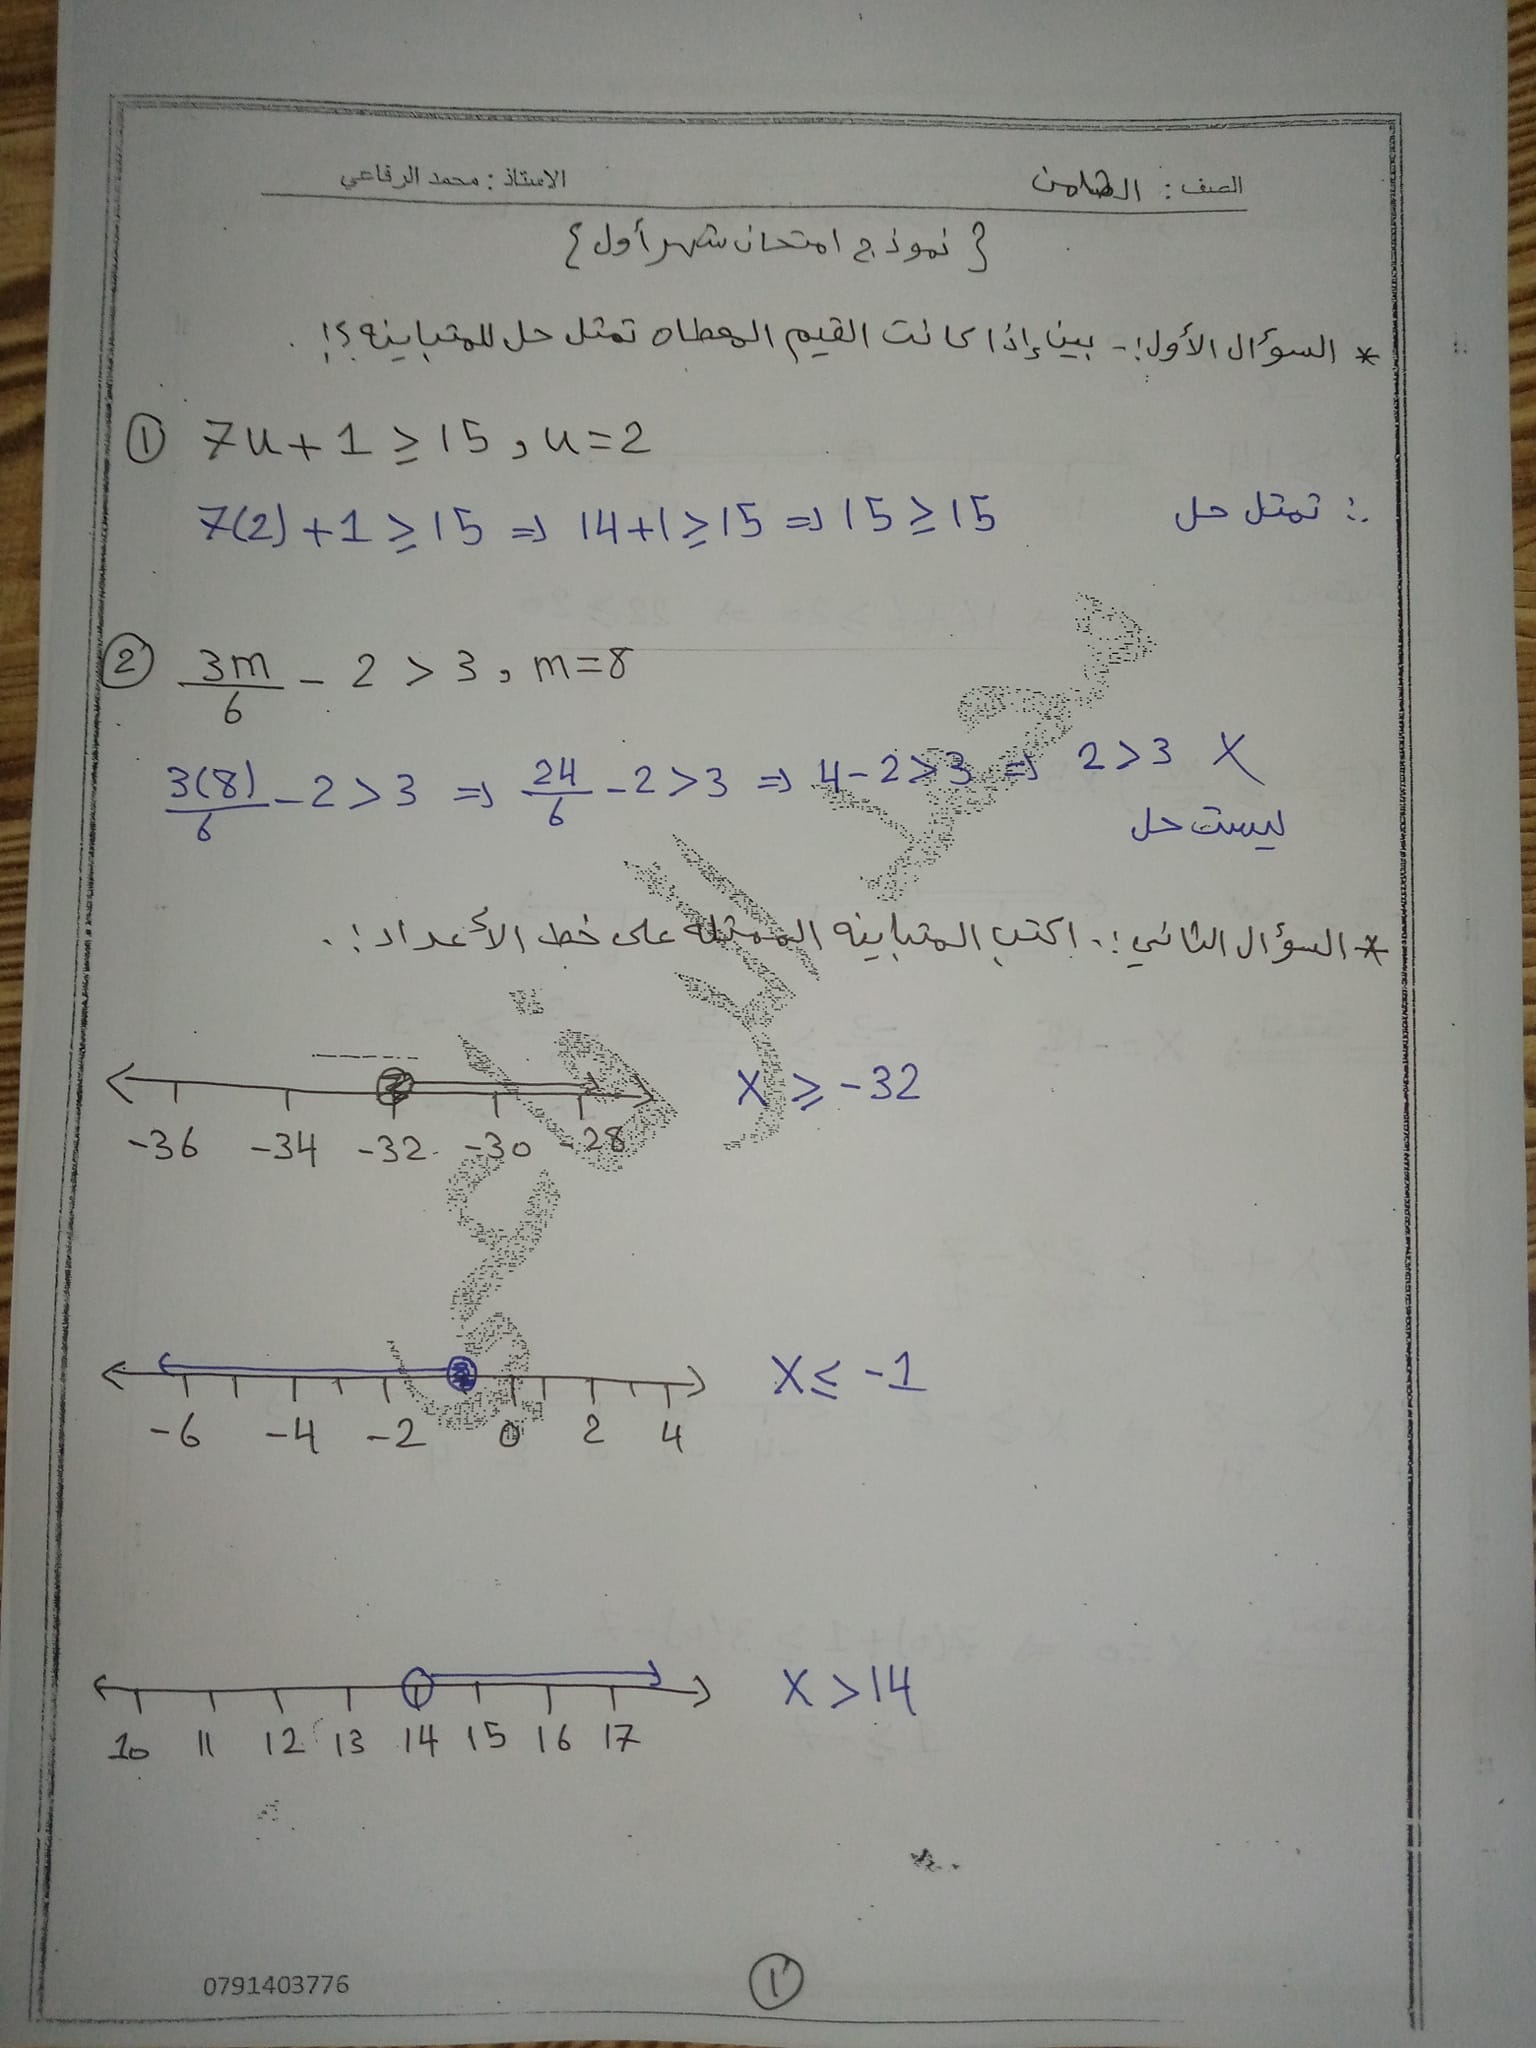 1 صور امتحان رياضيات الشهر الاول للصف الثامن الفصل الثاني 2022 مع الحل.jpg